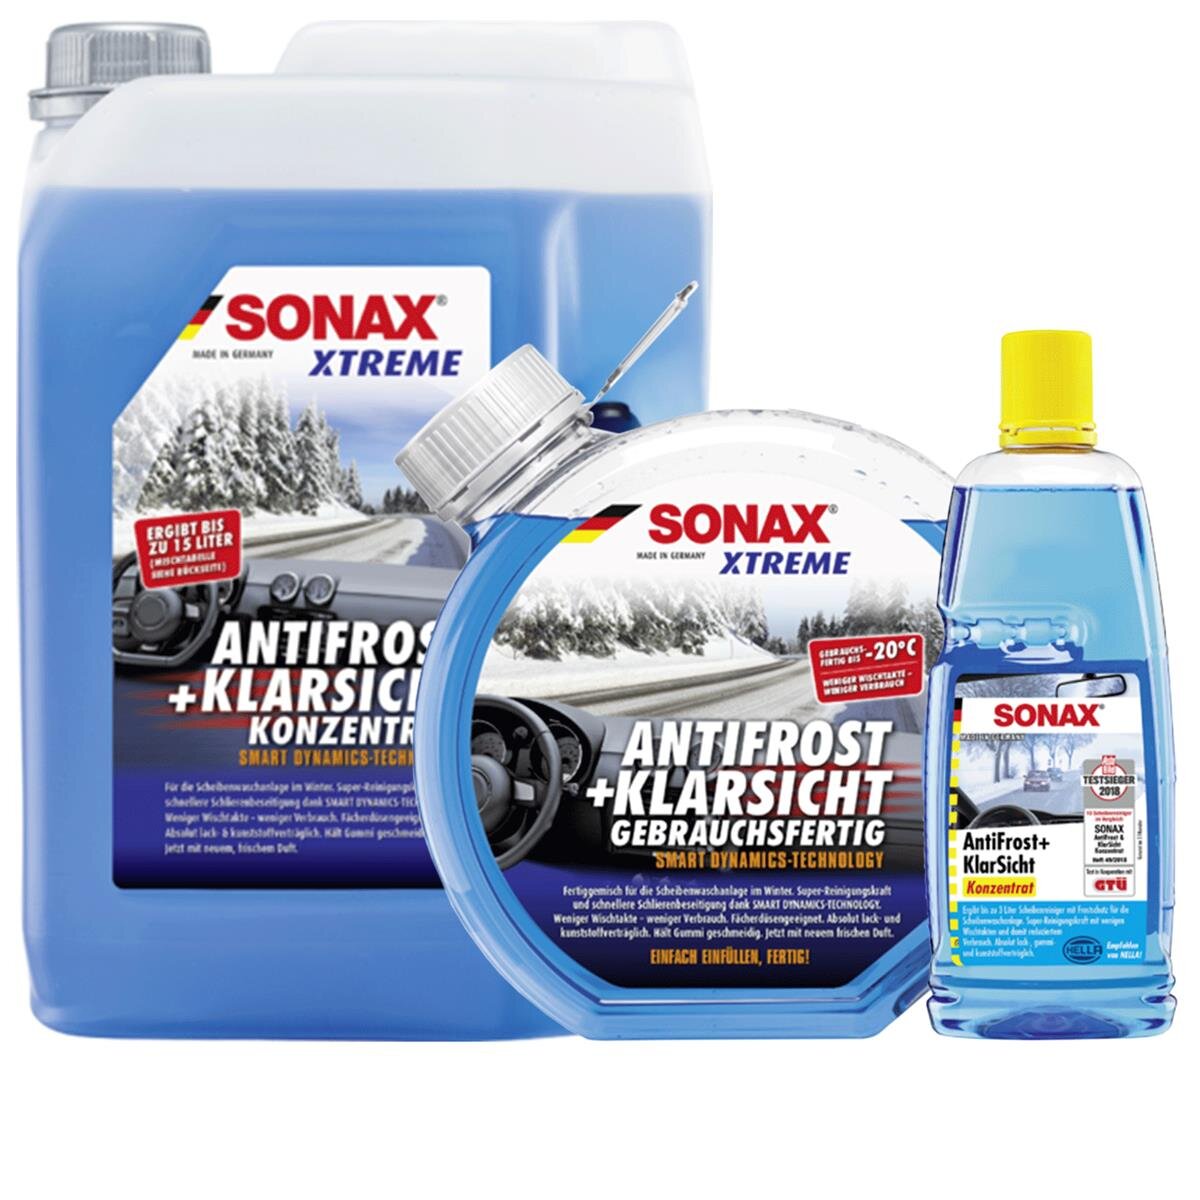 SONAX AntiFrost & KlarSicht, 4,29 €